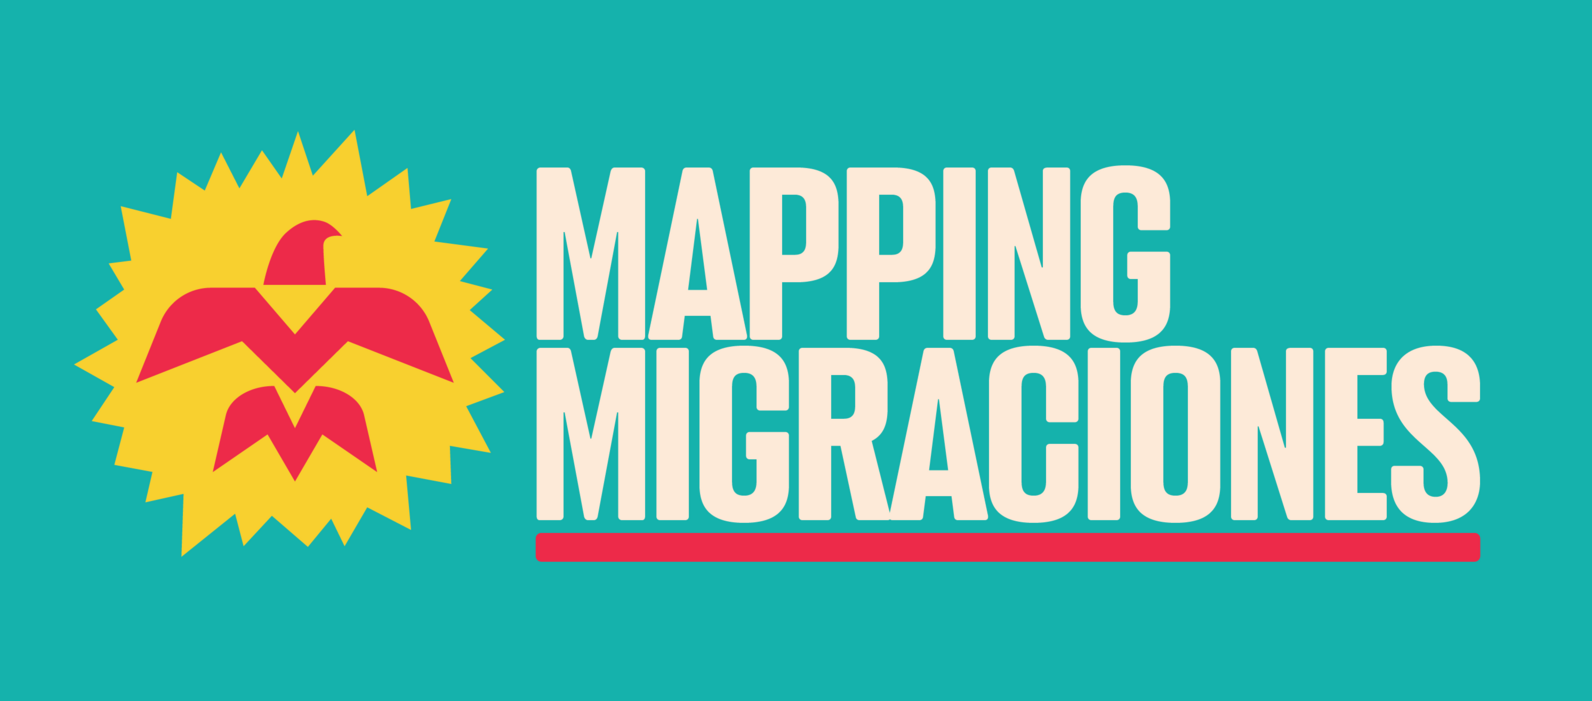 Mapping Migraciones